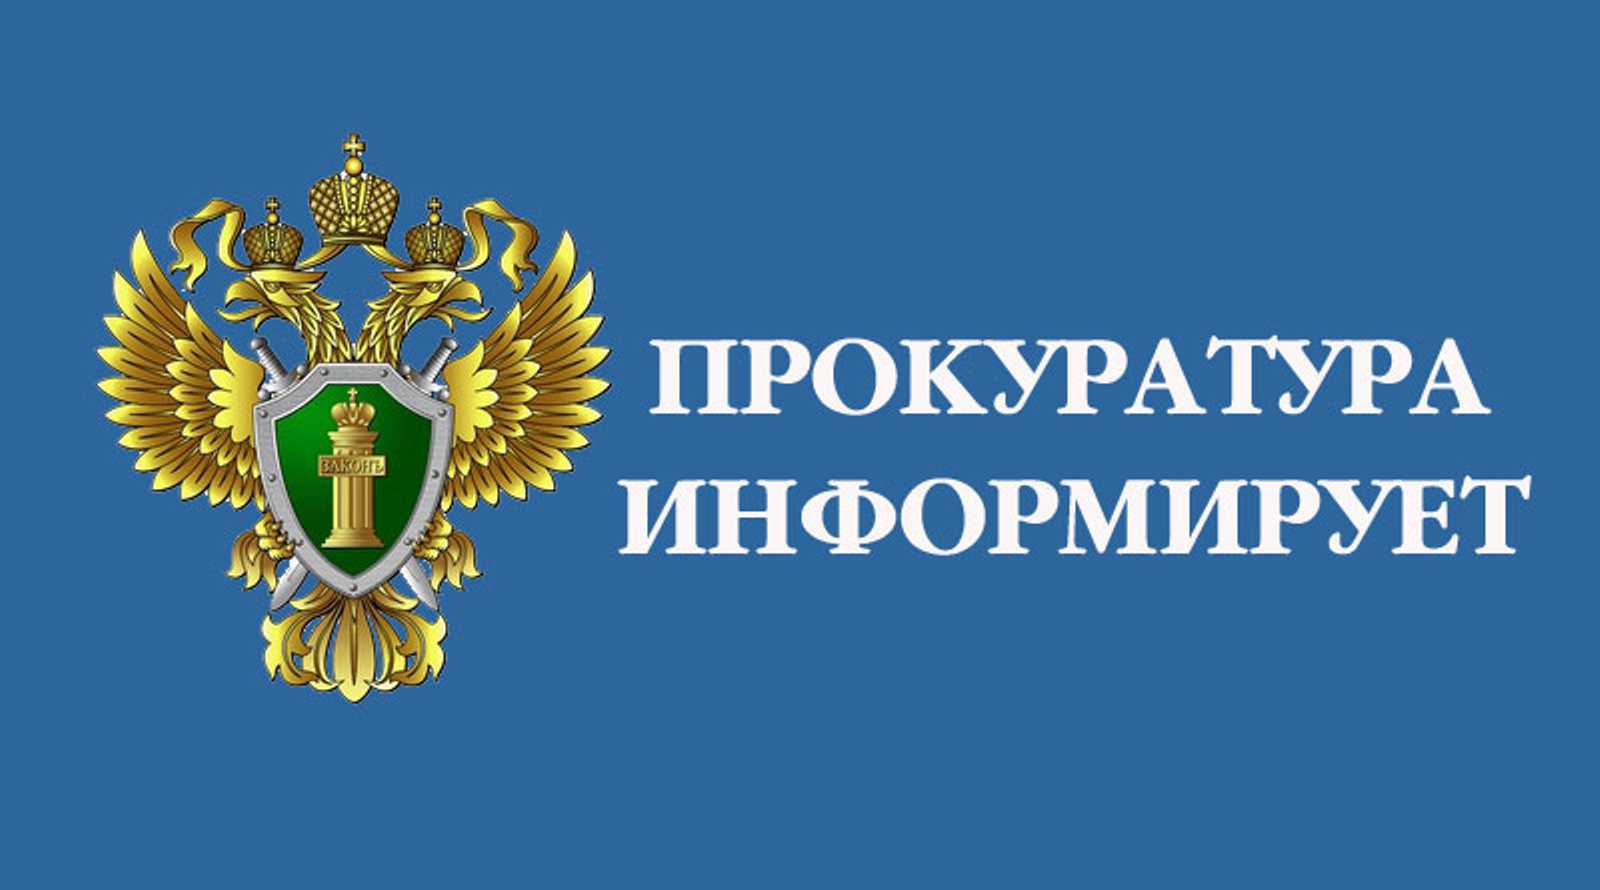 Прокуратура Алтайского края  разъясняет «Поддержка участников специальной военной операции и их семей».